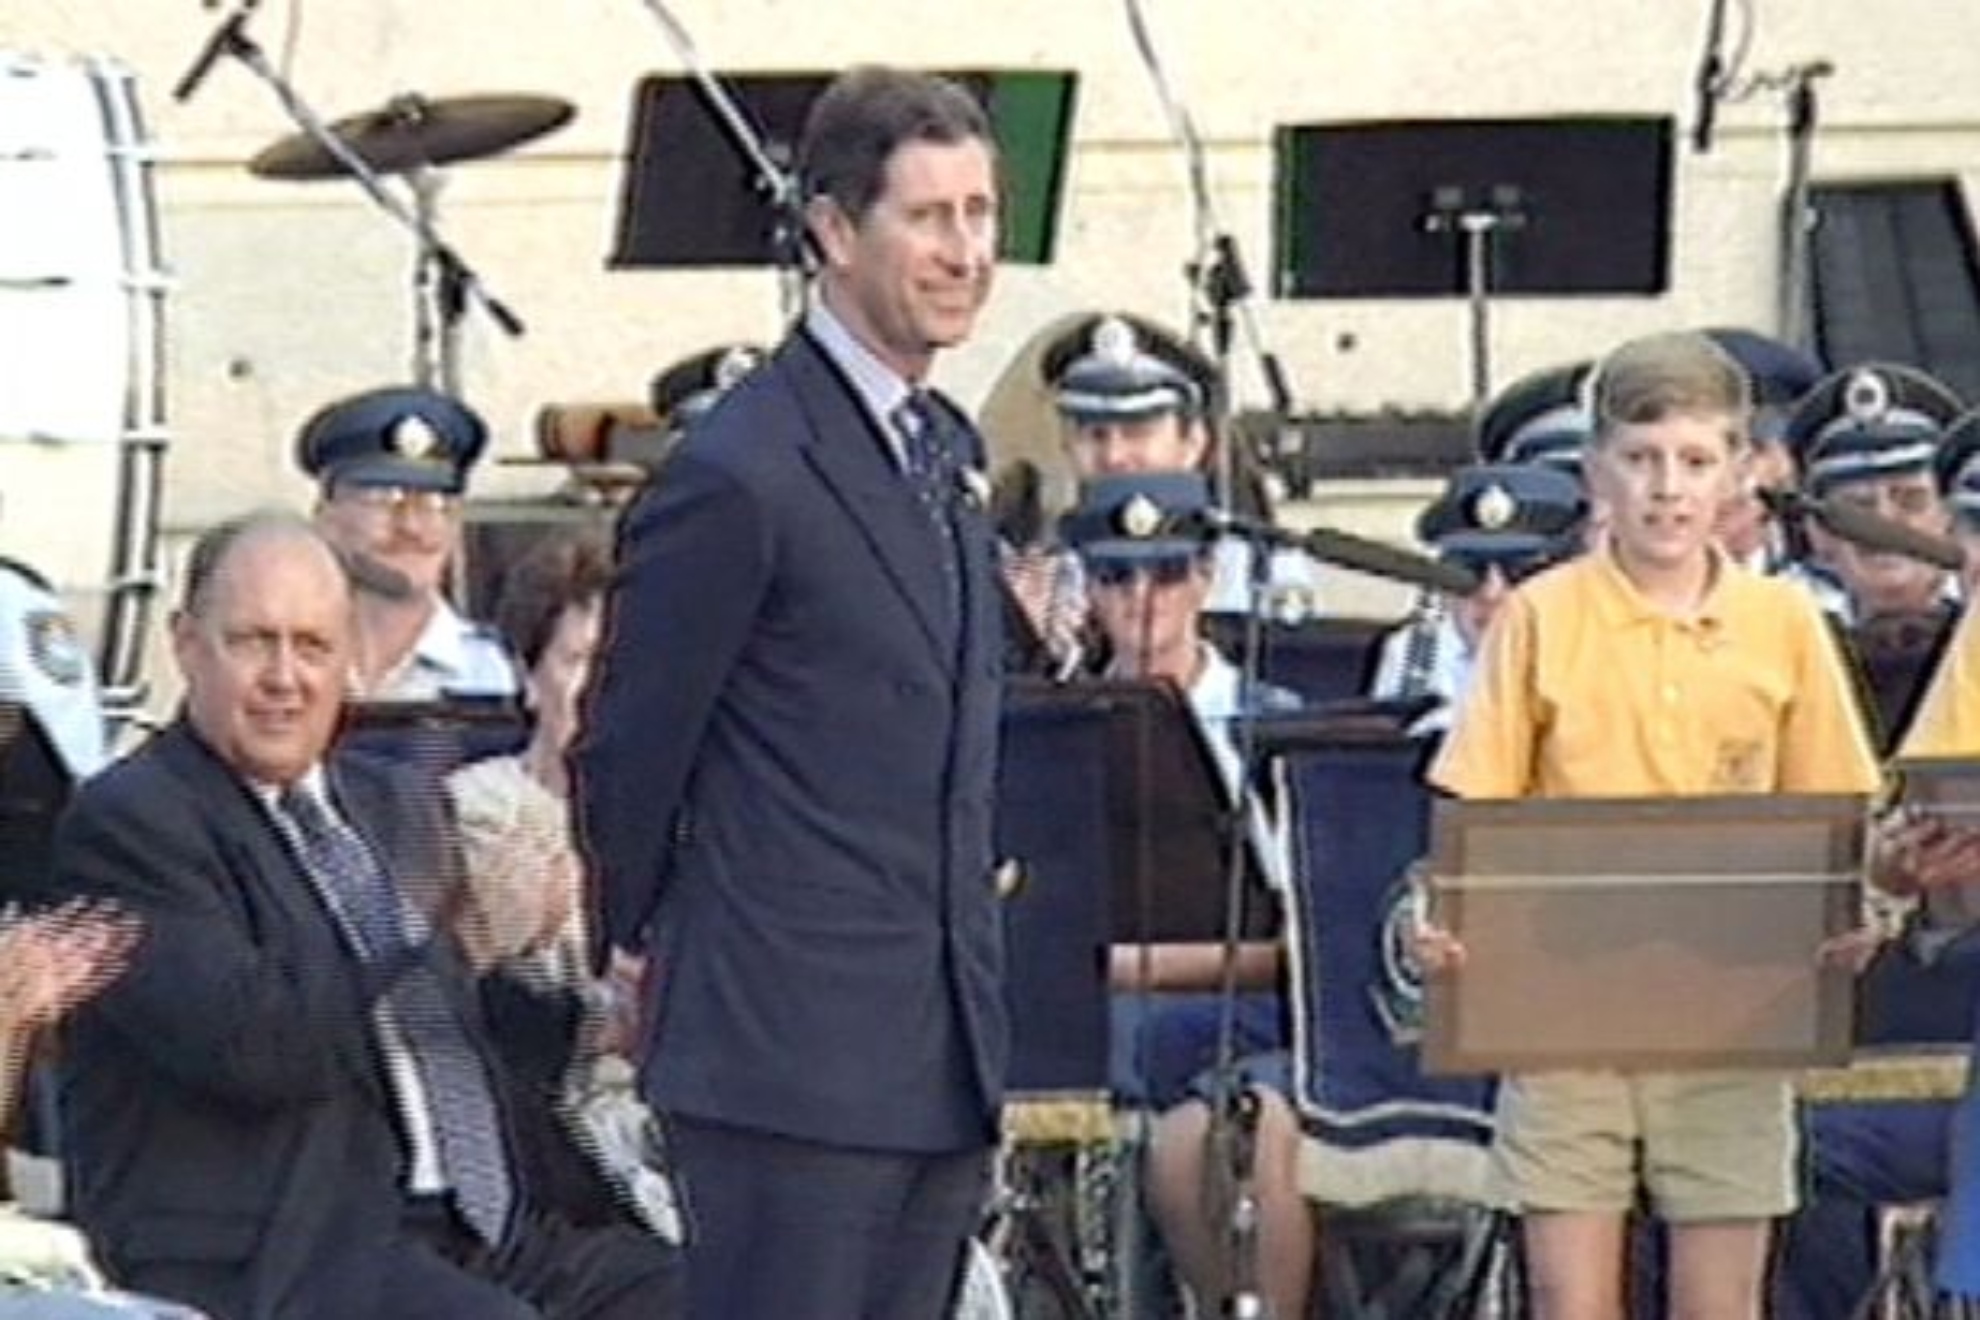 Prince Charles in Sydney, 1994 - Screengrab